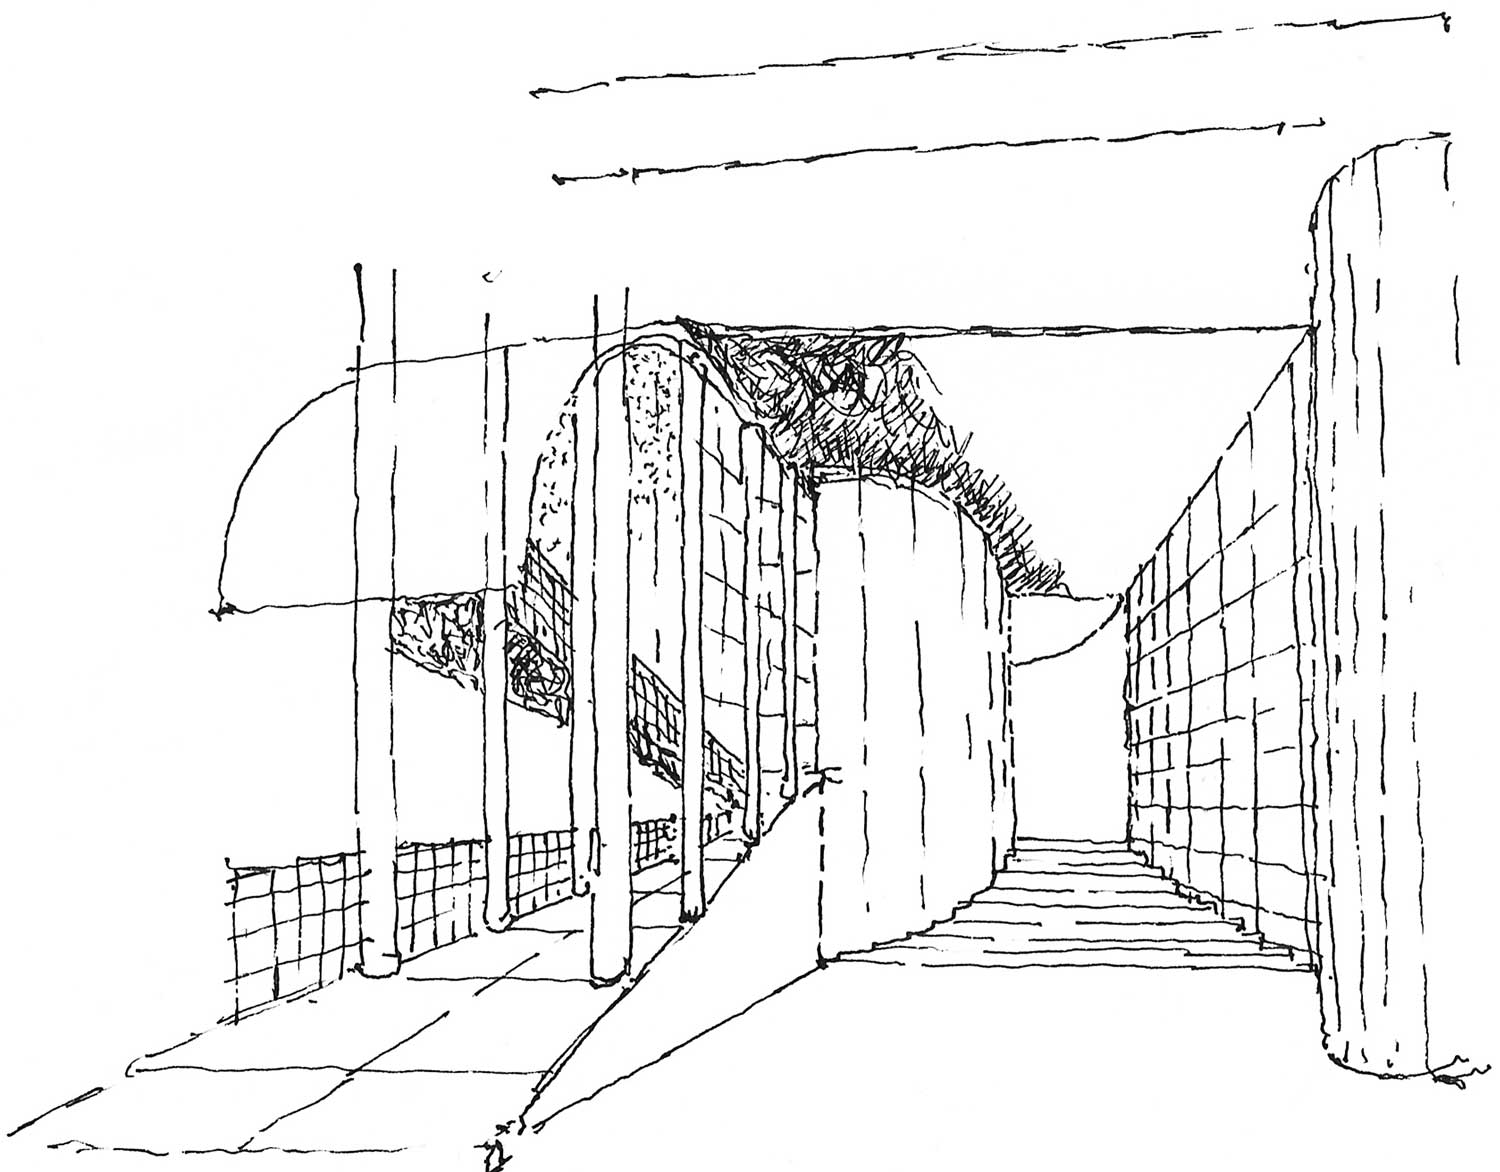 12 - Progetto di ampliamento della Facoltà di Architettura “Valle Giulia”, Roma. Concorso - Vista interna